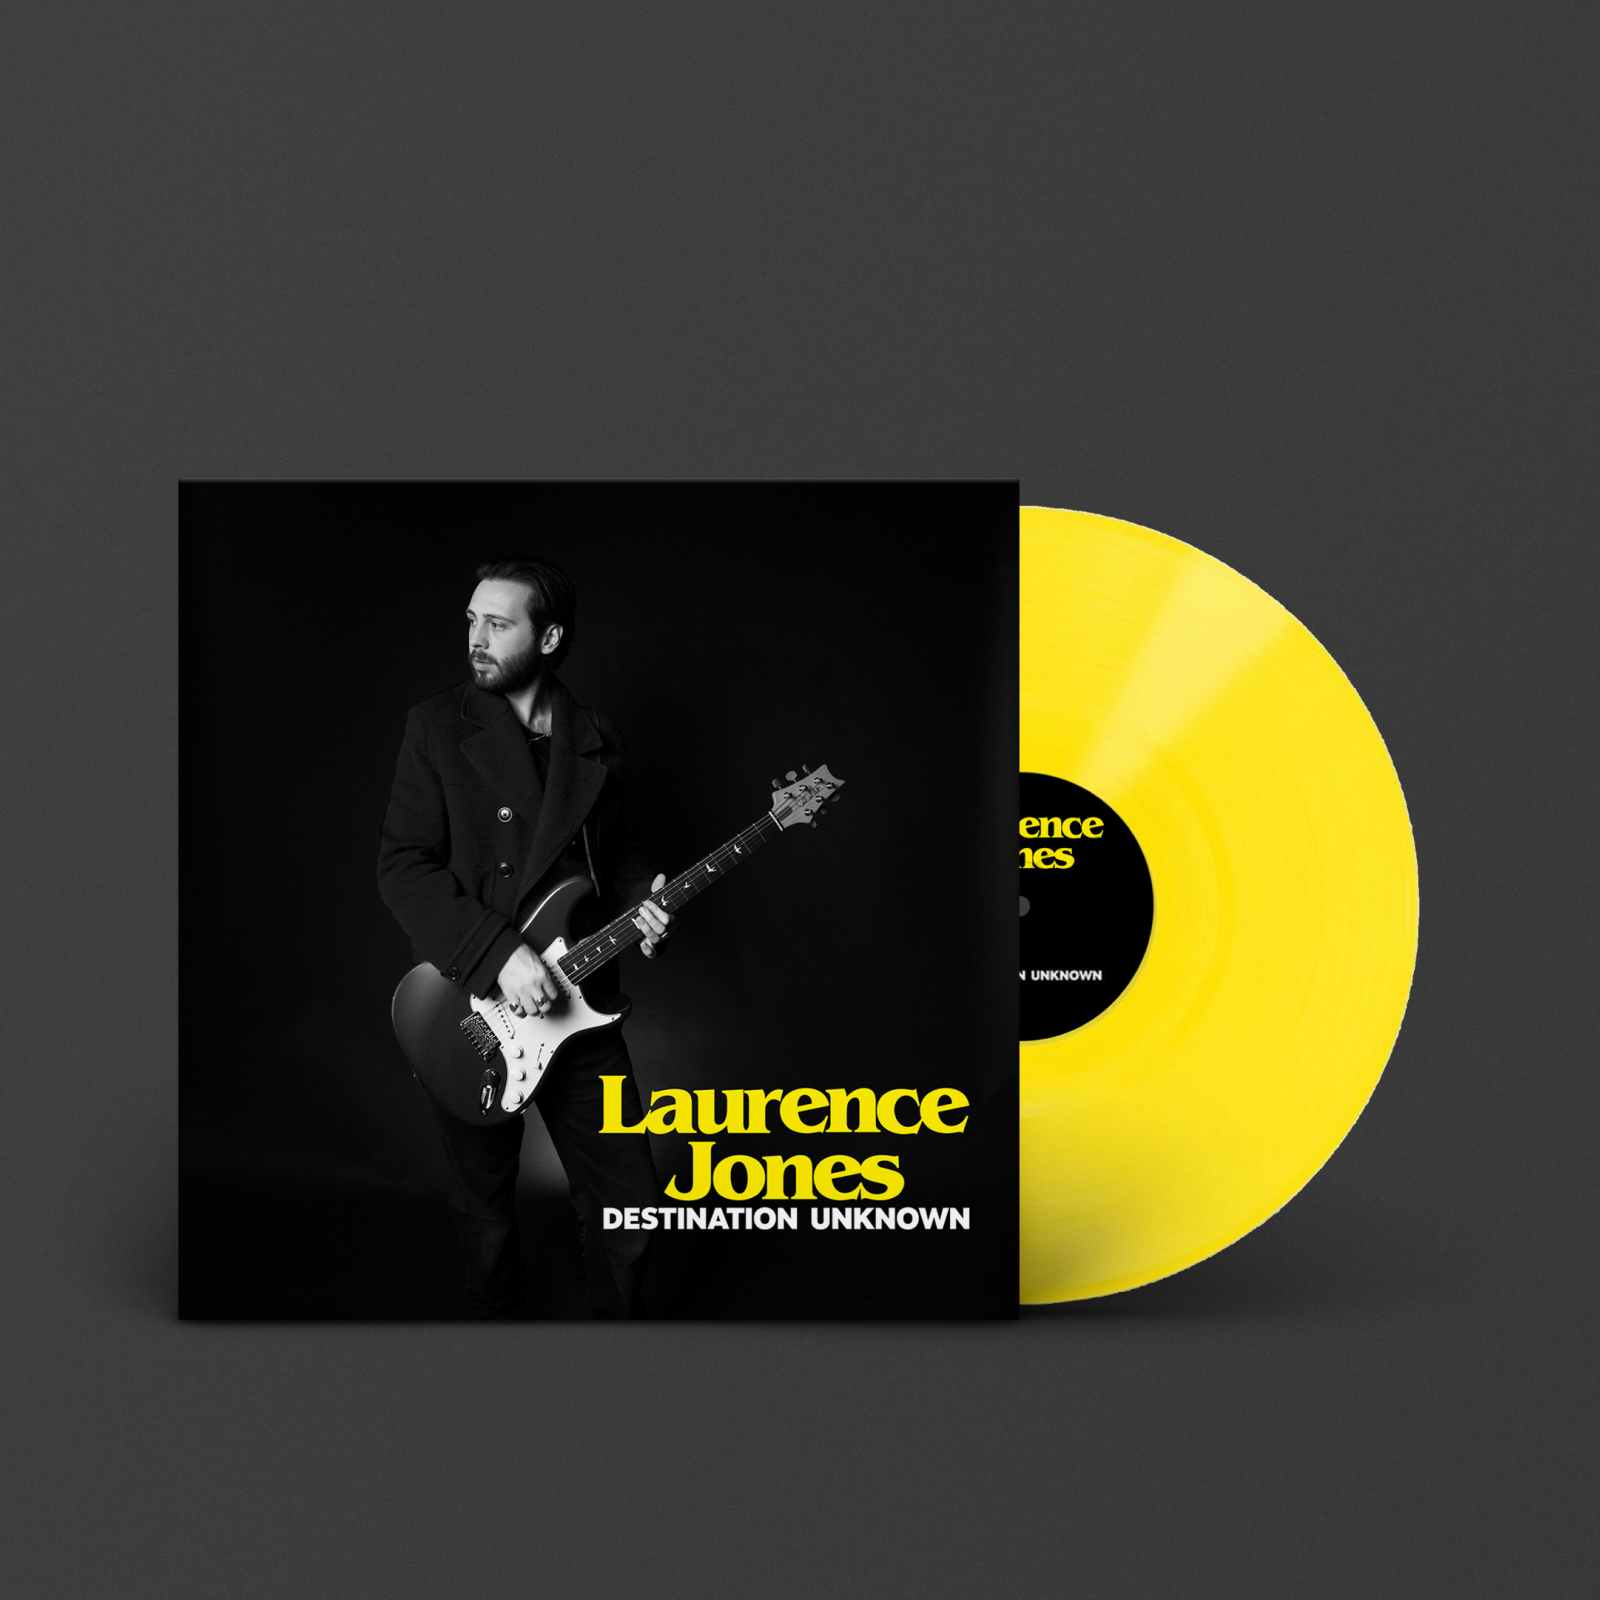 Laurence Jones spielt auf einer gelben DESTINATION UNKNOWN, LAURENCE JONES Schallplatte von Marshall.